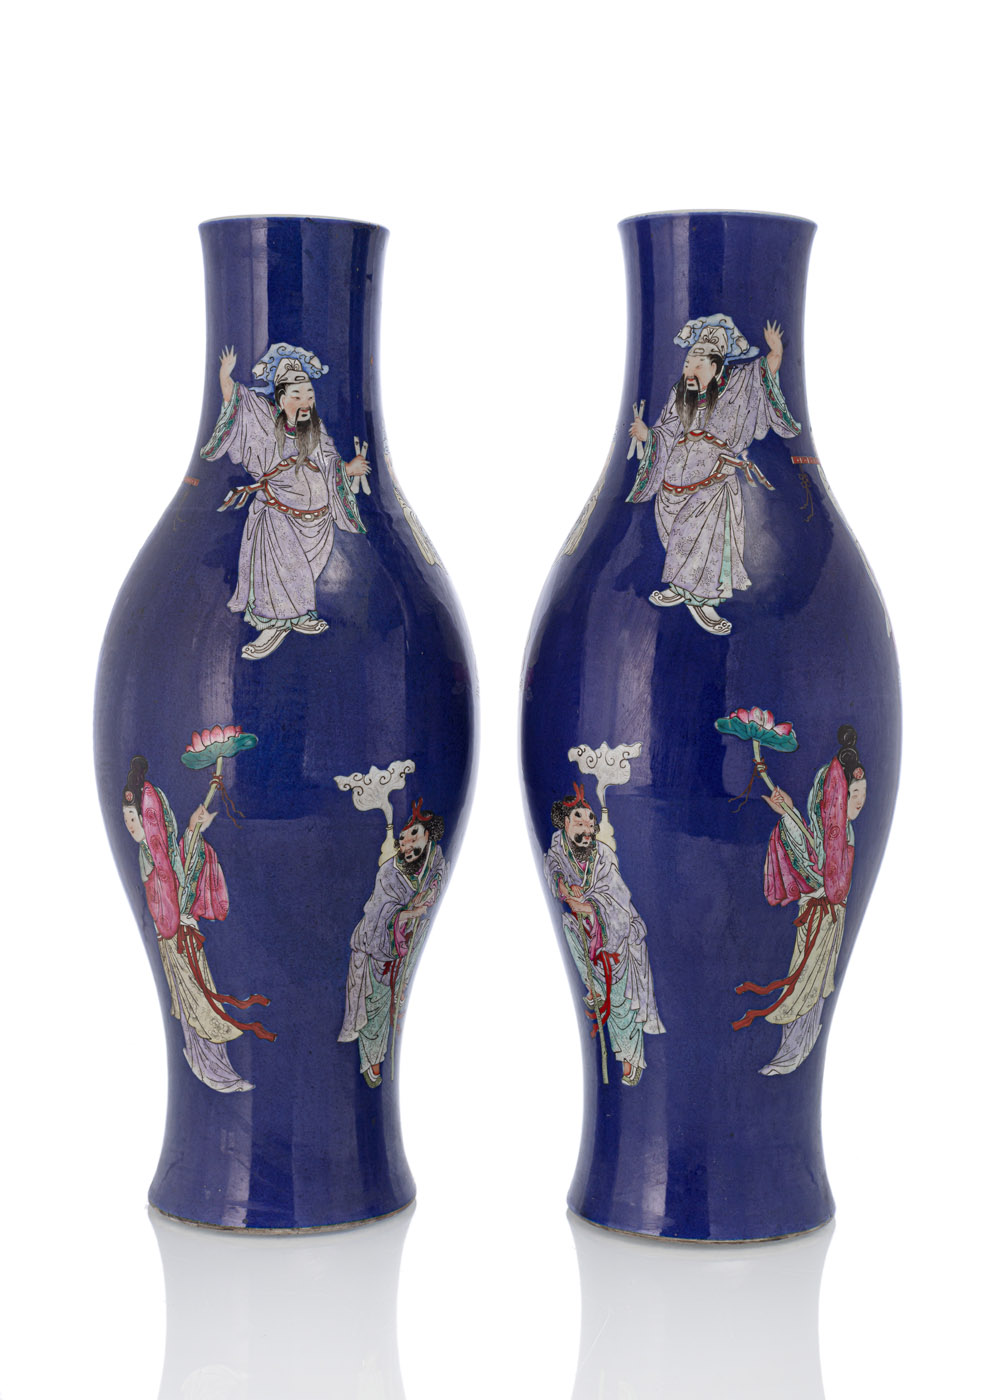 <b>Paar Porzellanvasen mit 'Famille rose'-Dekor von Unsterblichen auf blauem Fond</b>